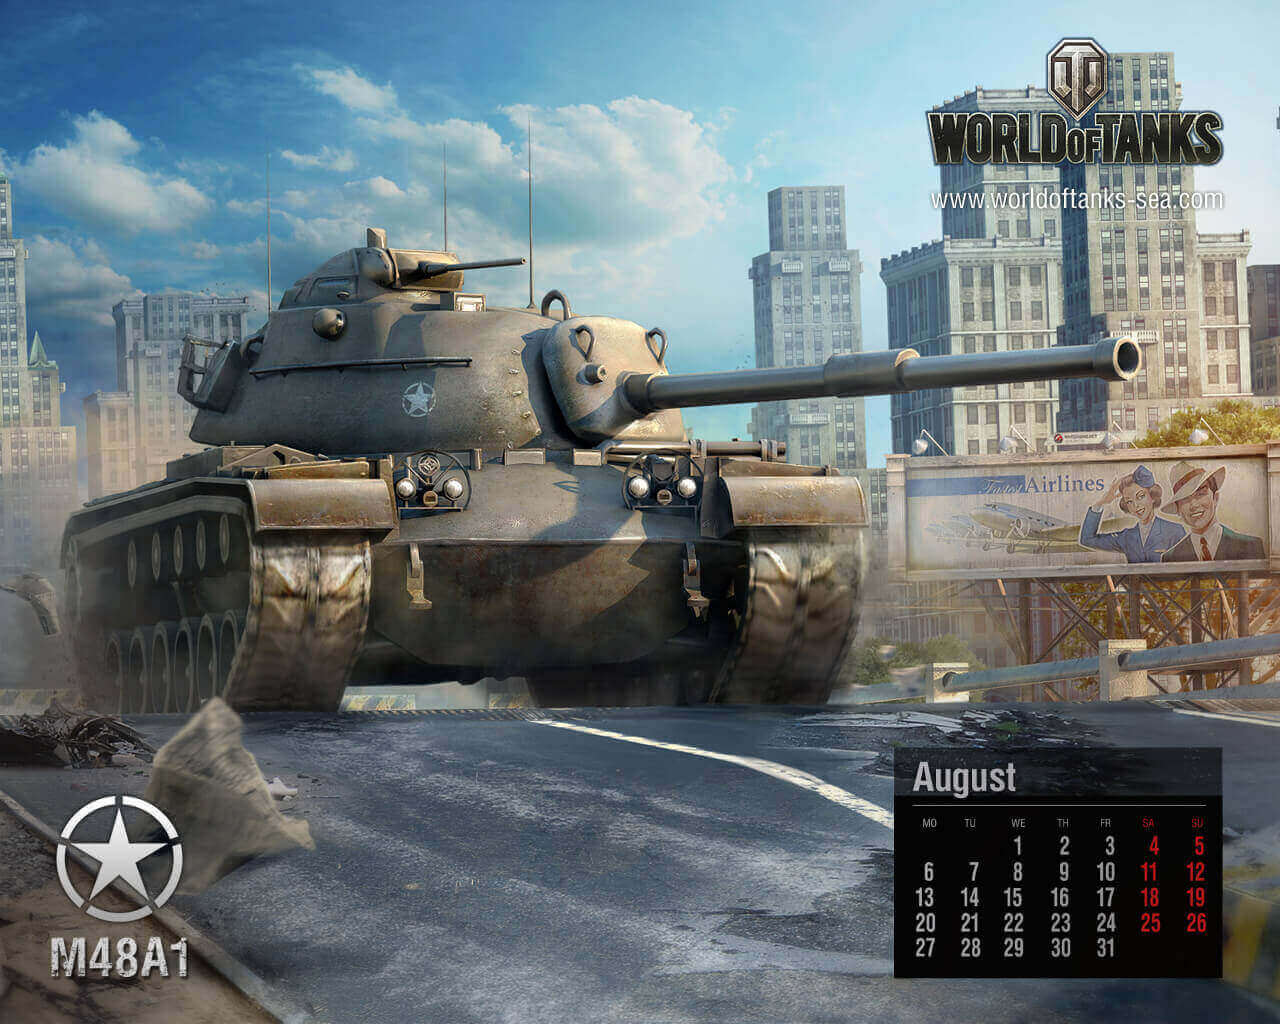 August Calendar: M48A1